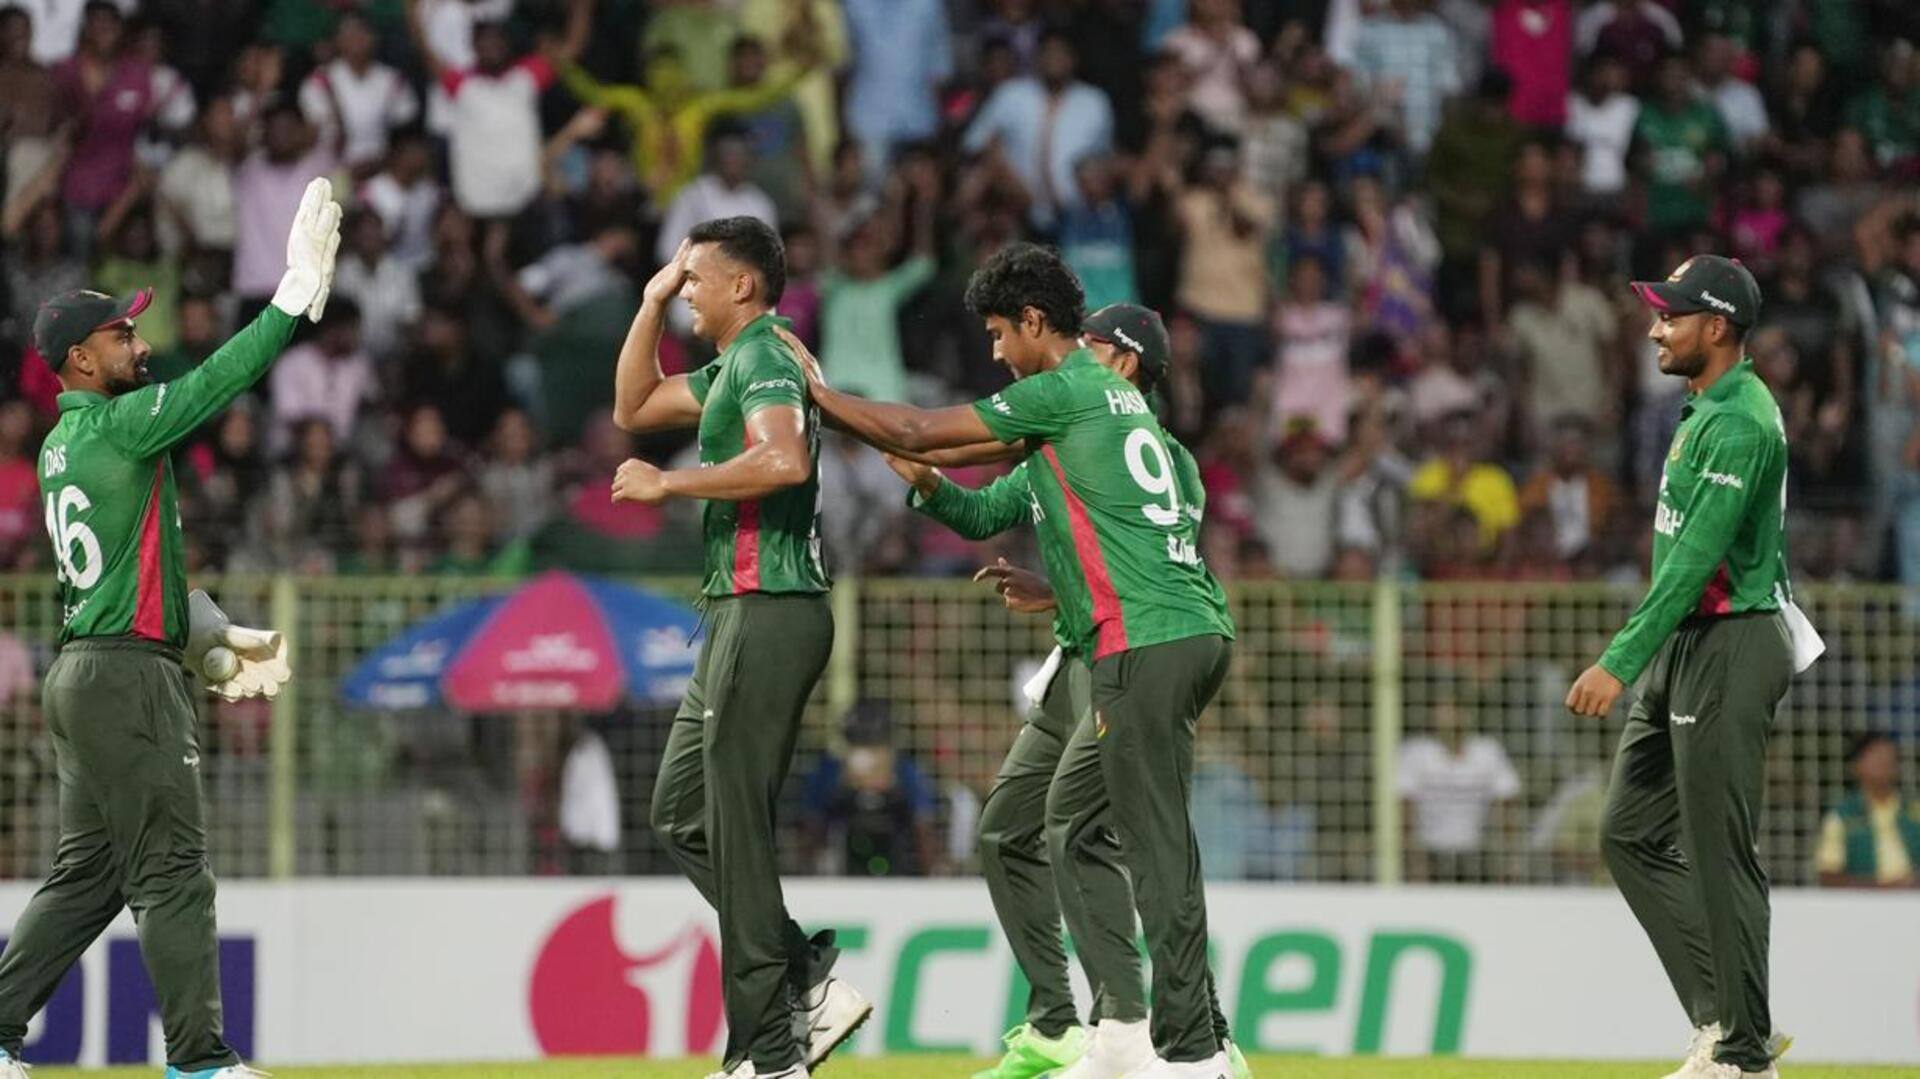 दूसरा टी-20: बांग्लादेश ने अफगानिस्तान को 6 विकेट से हराया, मैच में बने ये रिकॉर्ड्स